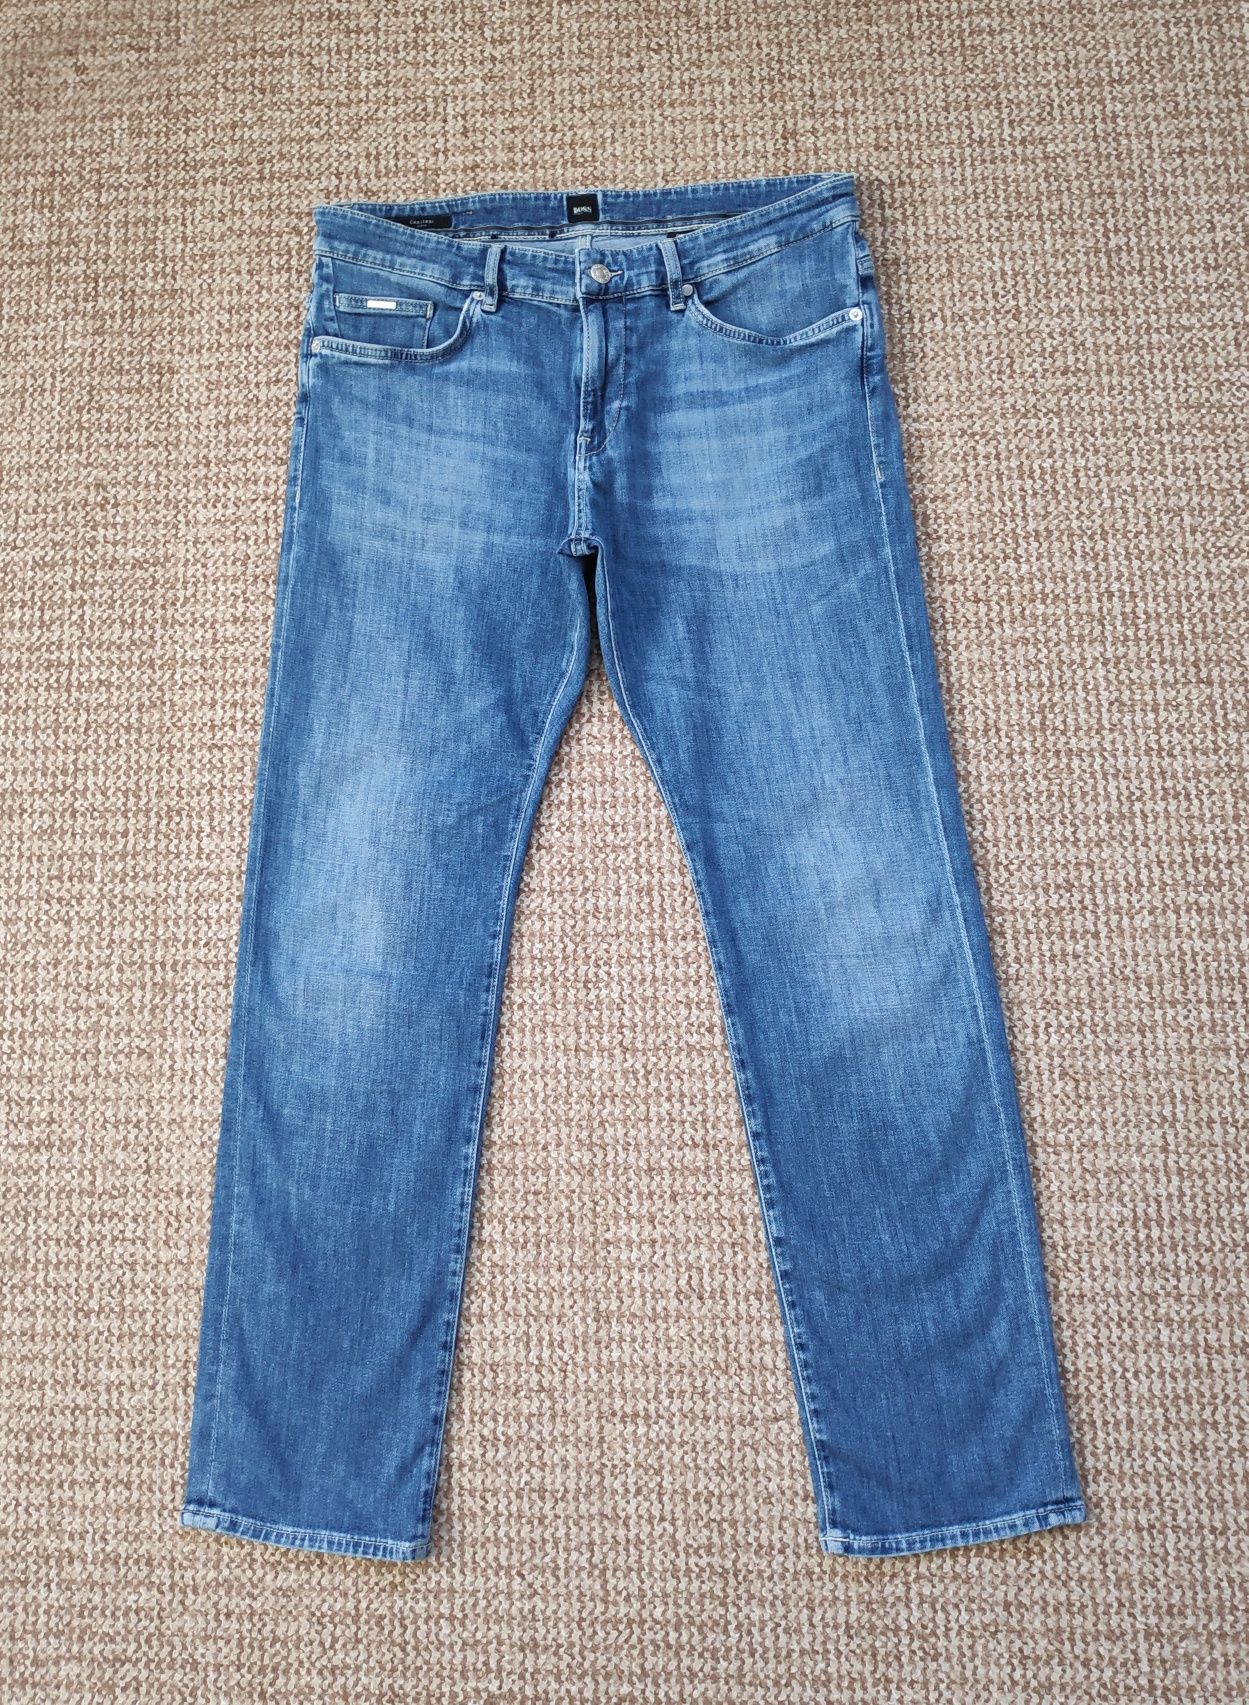 Hugo Boss летние джинсы Candiani slim fit оригинал W34 L30